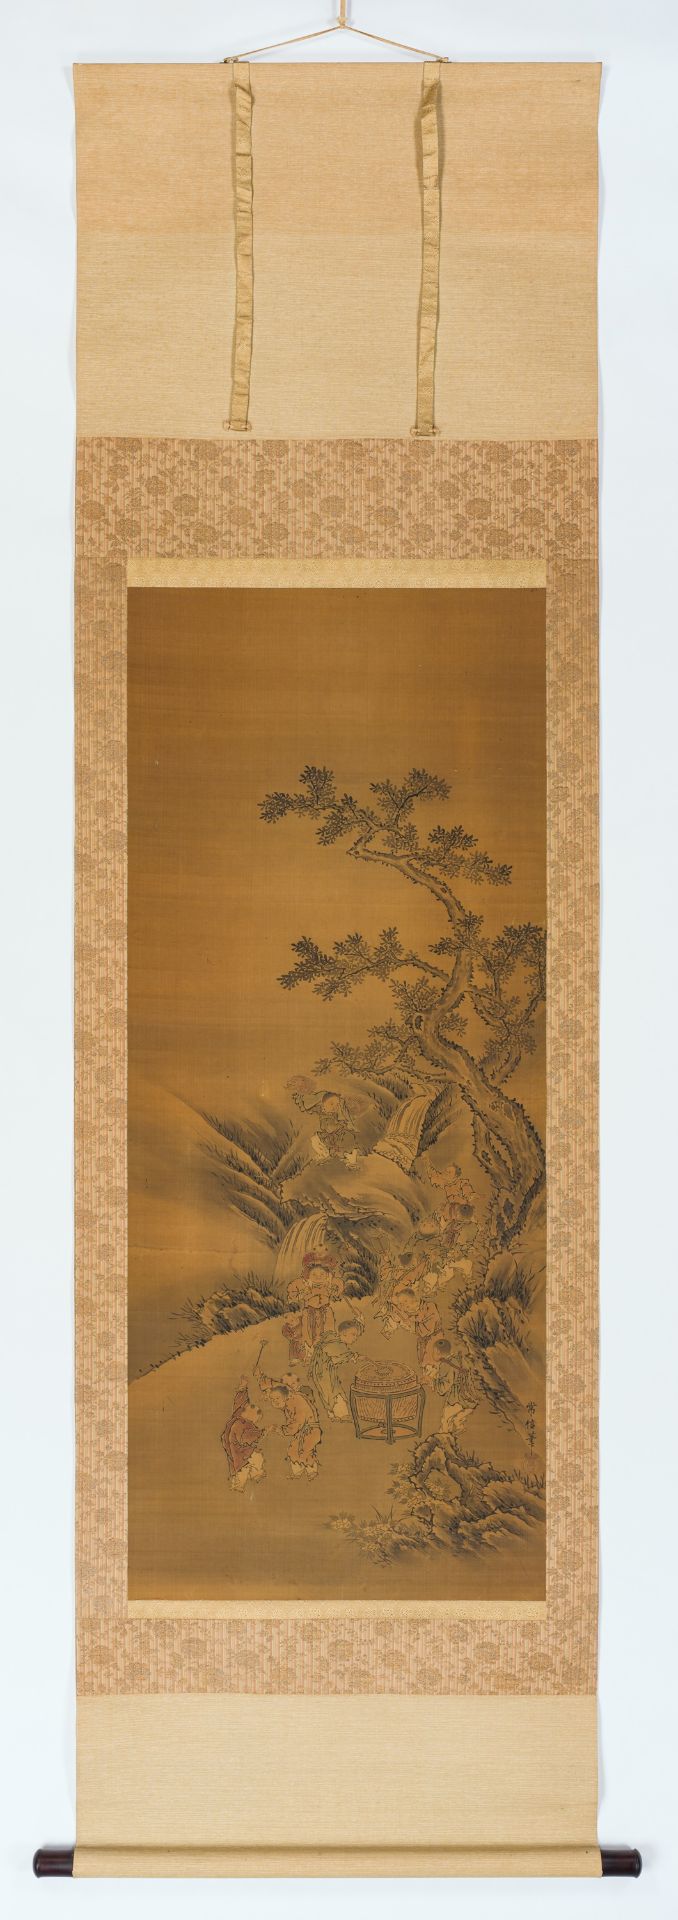 KANO TSUNENOBU (1636-1713): 'KARAKO BOYS AT PLAY' - Image 5 of 6